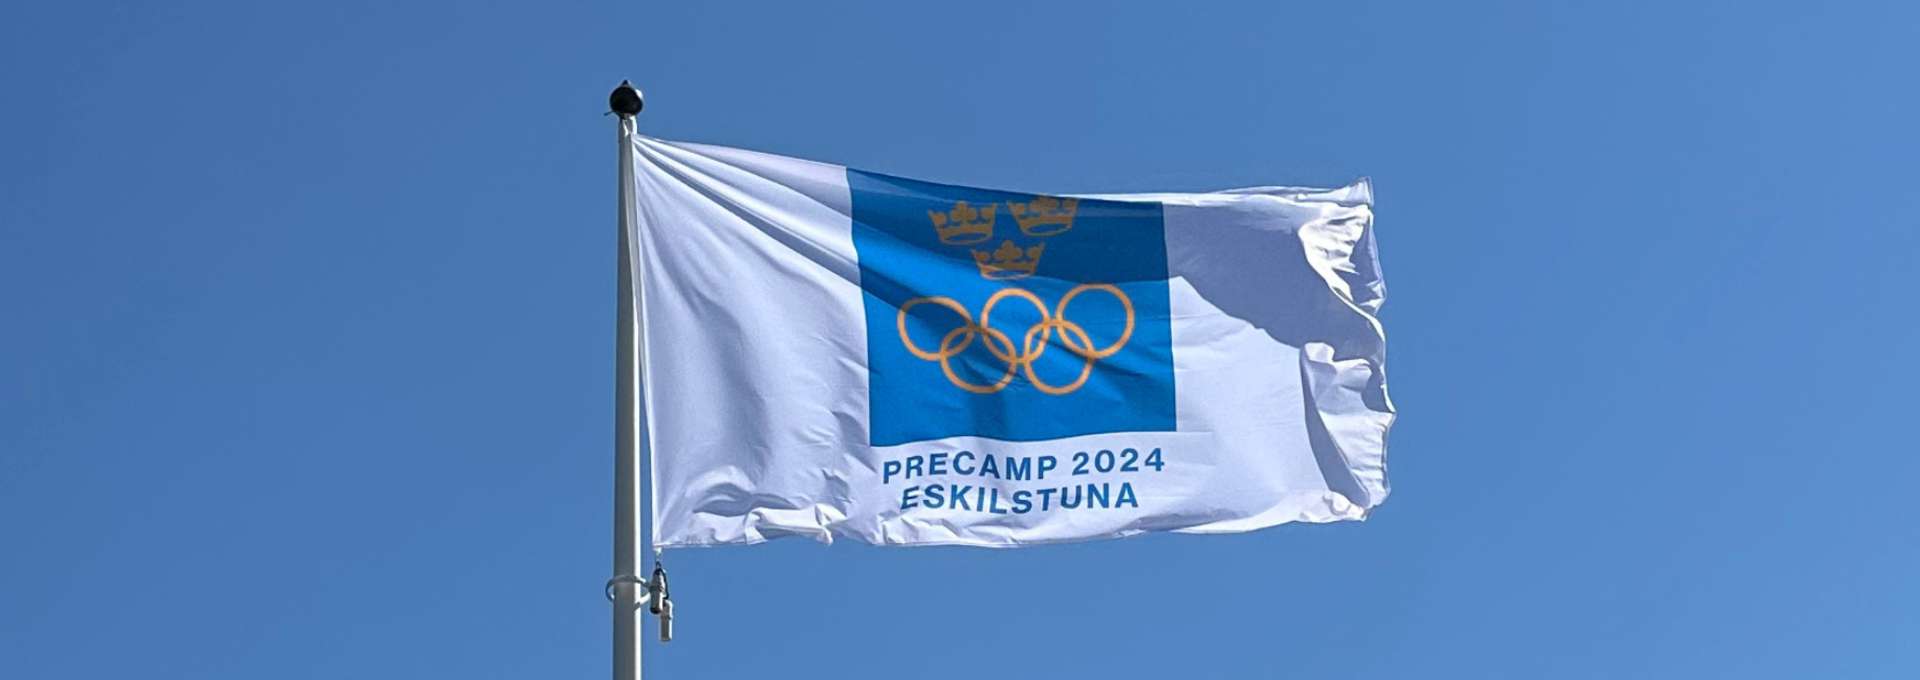 Precamp flagga på Rådhusbron i Eskilstuna